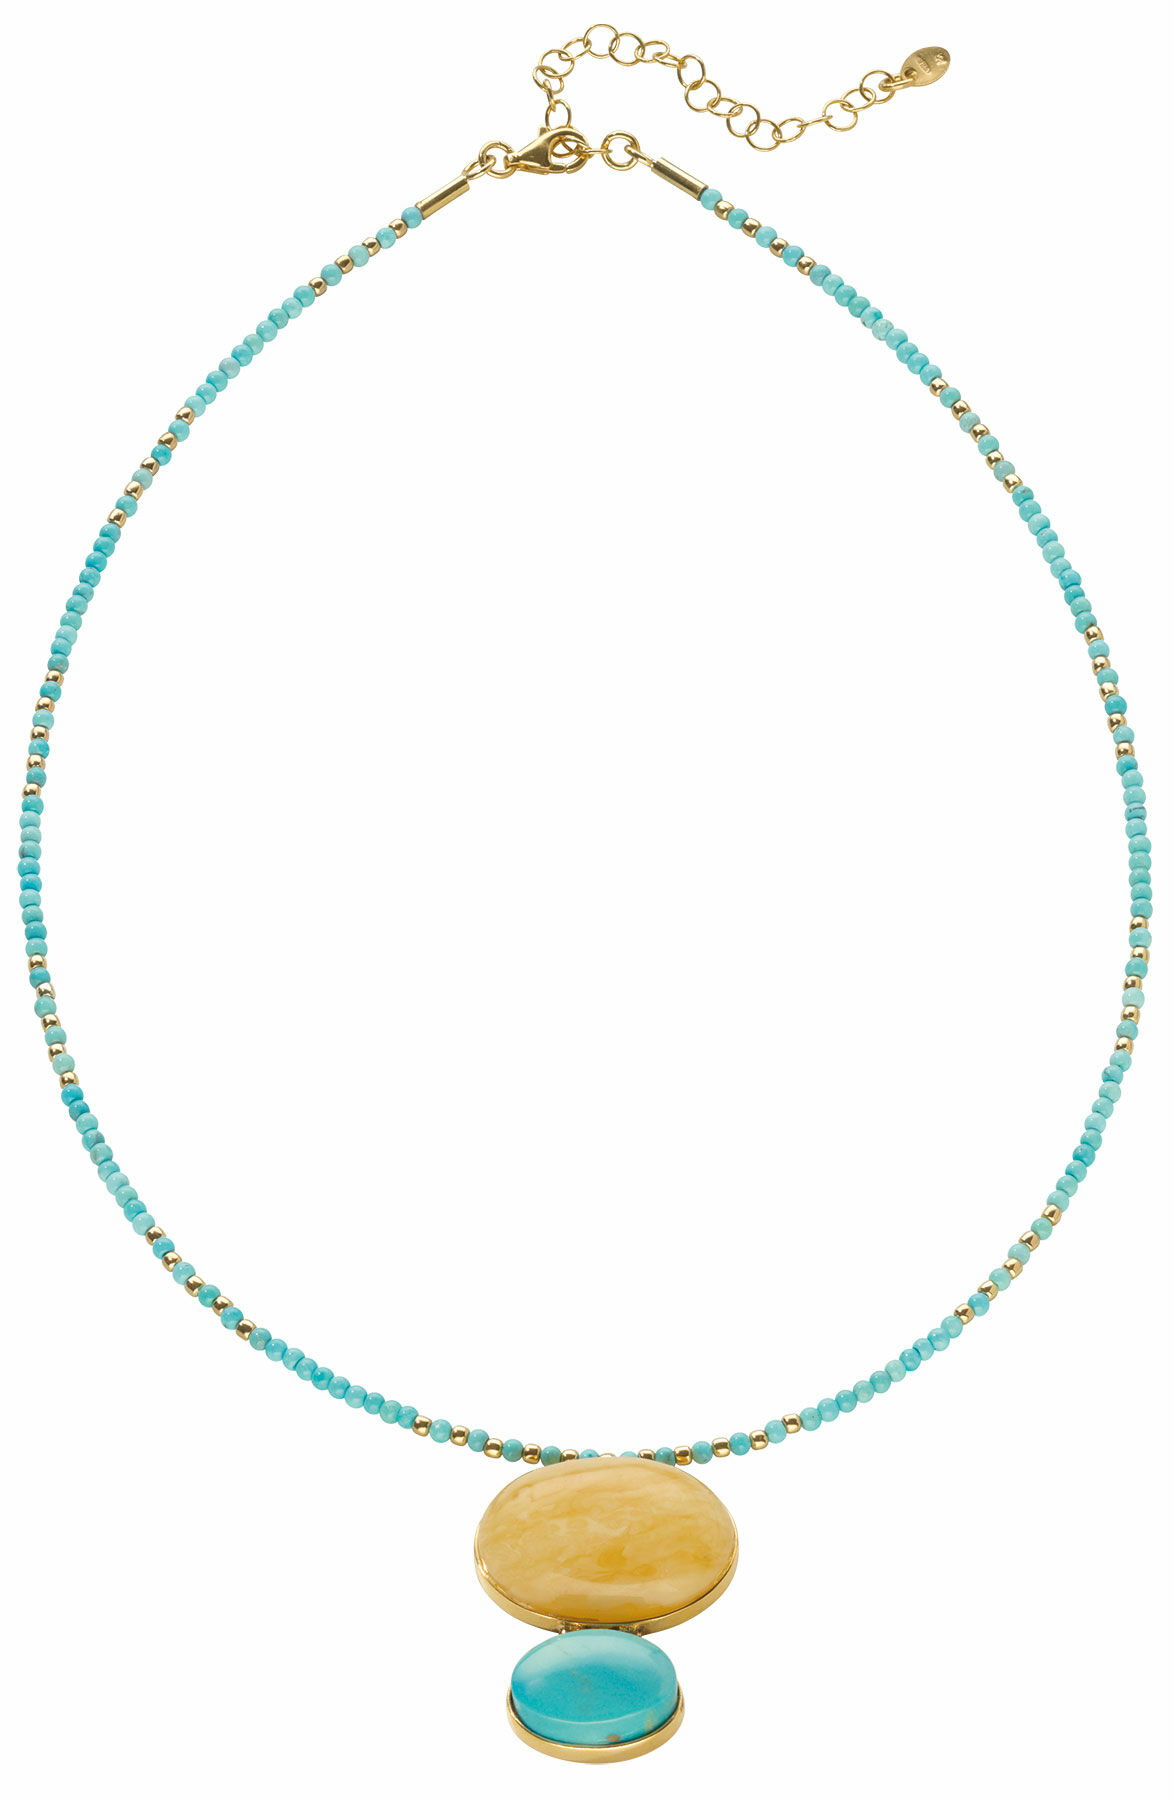 Necklace "Coastal Jewel"